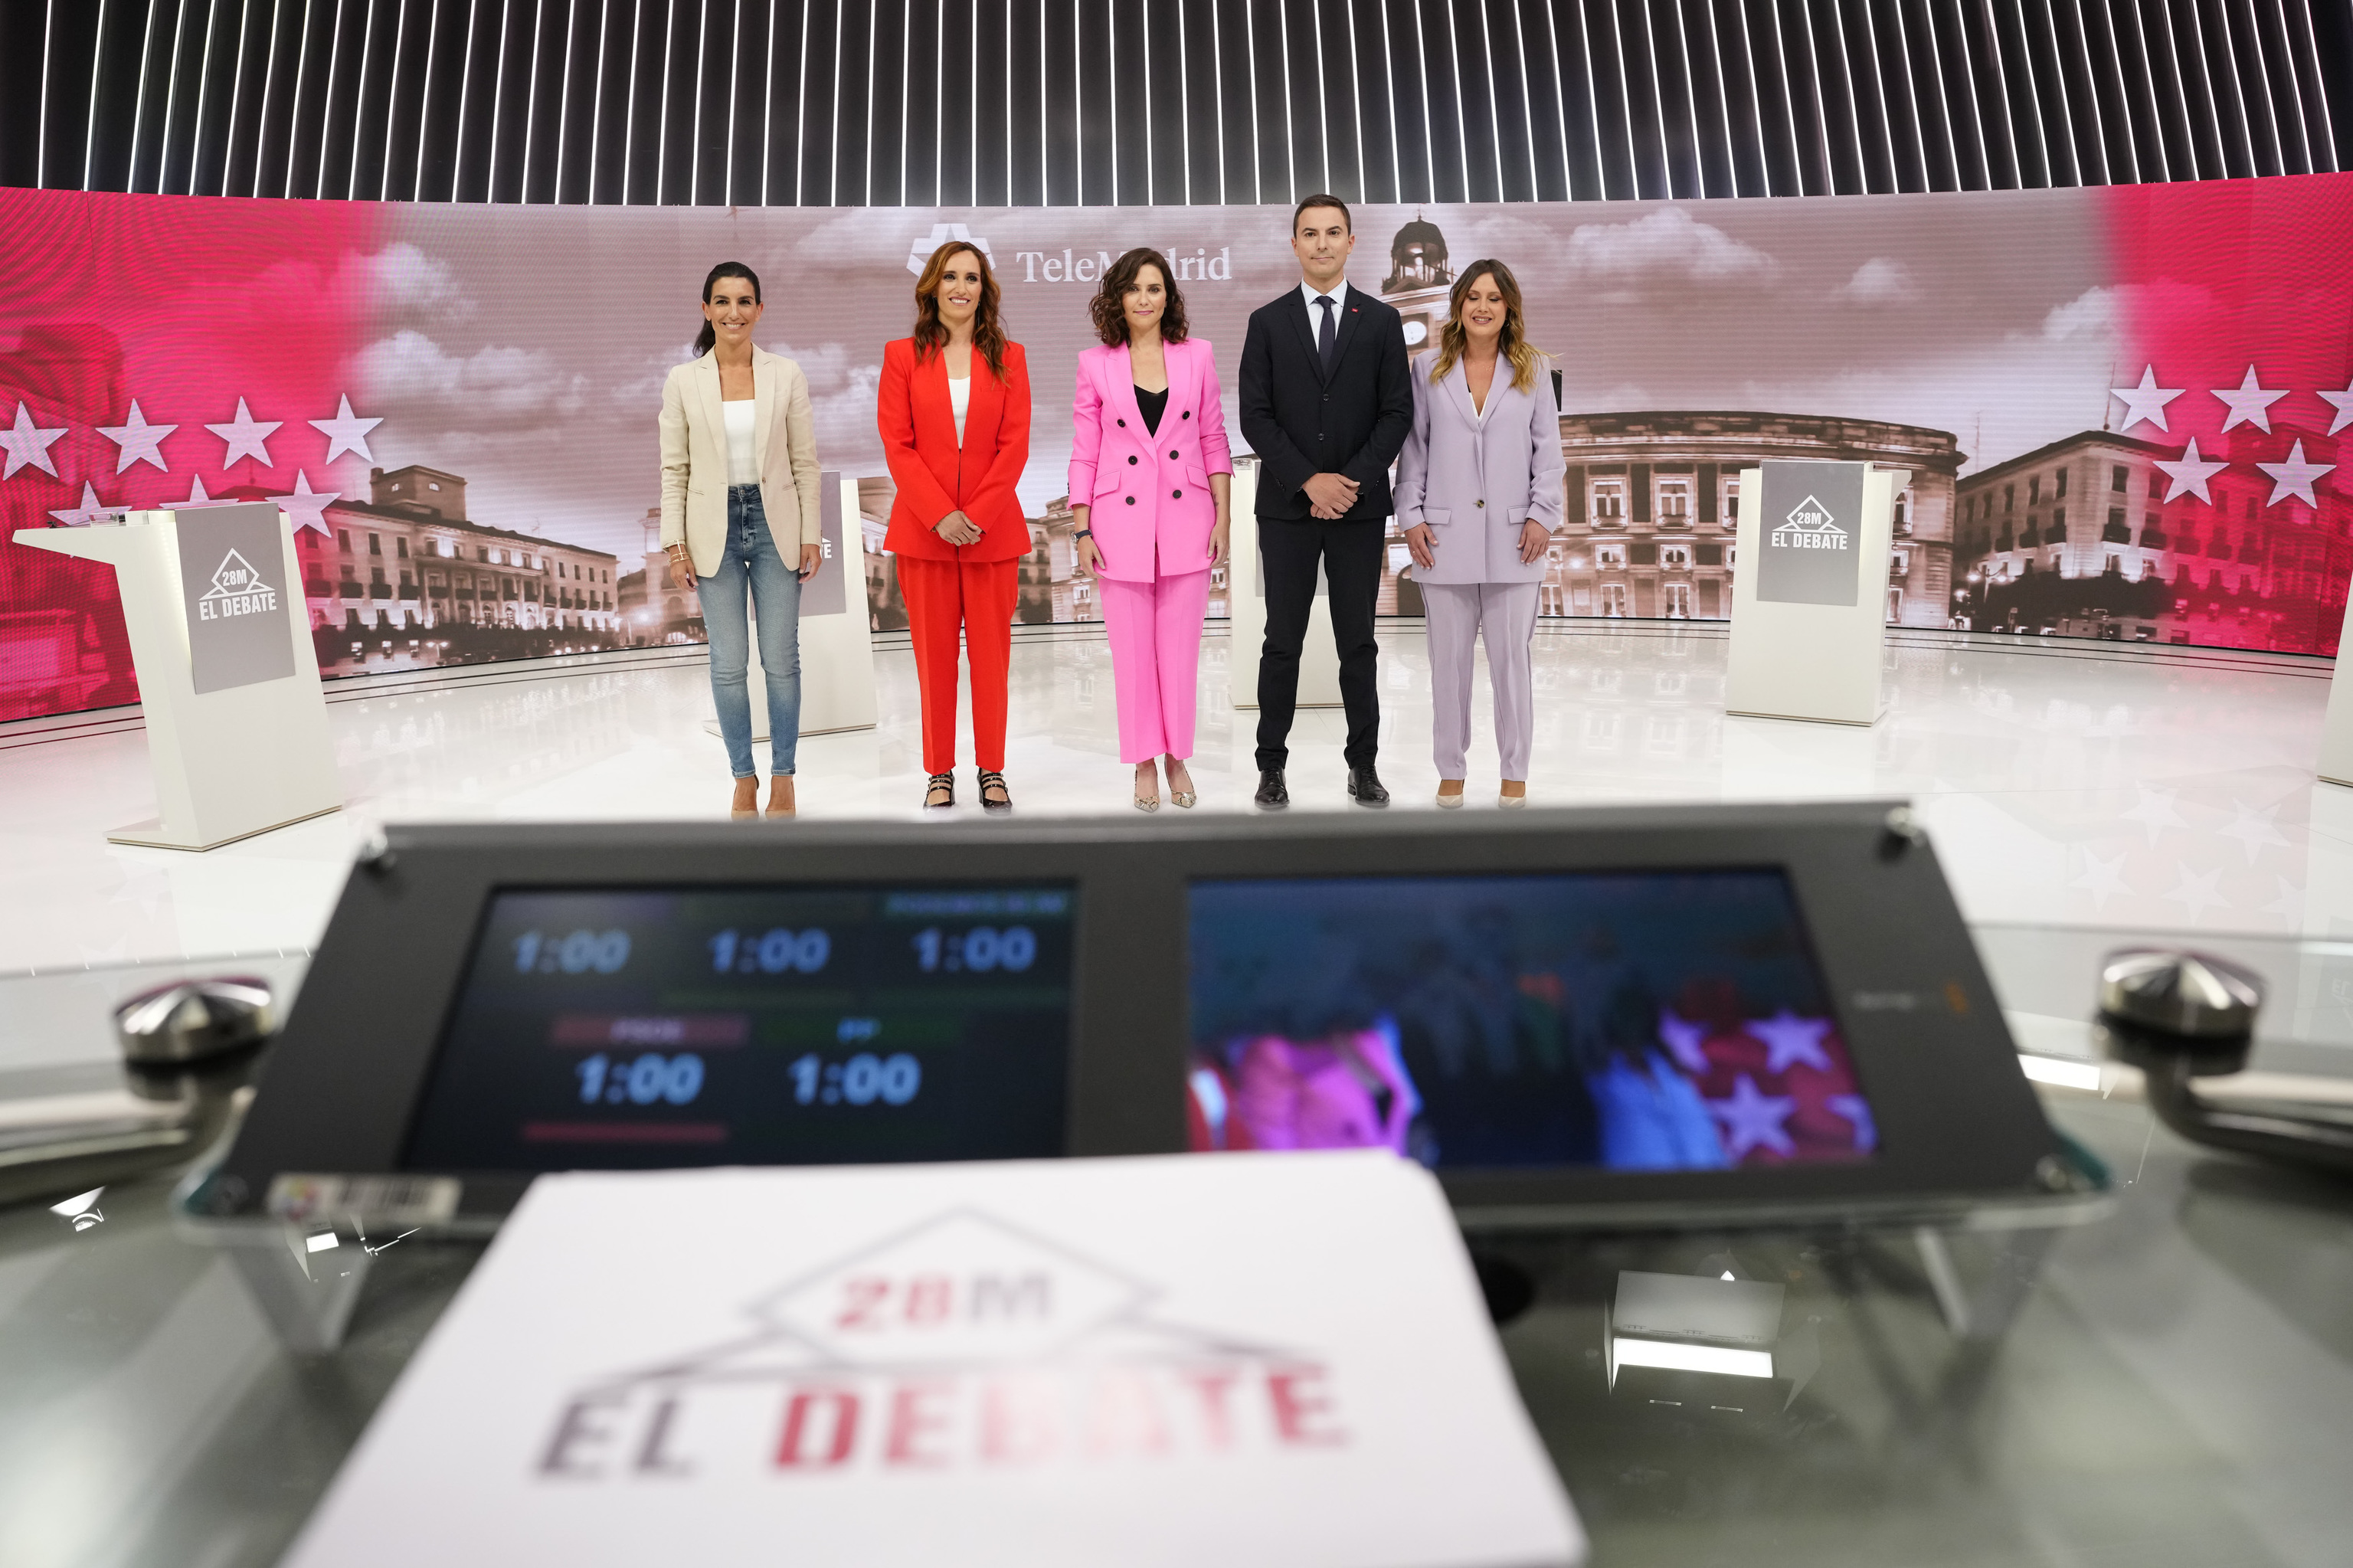 Los candidatos a la presidencia de la Comunidad de Madrid de Vox, Ms Madrid, PP, PSOE y Unidas Podemos, antes del debate electoral del 28M en Telemadrid.